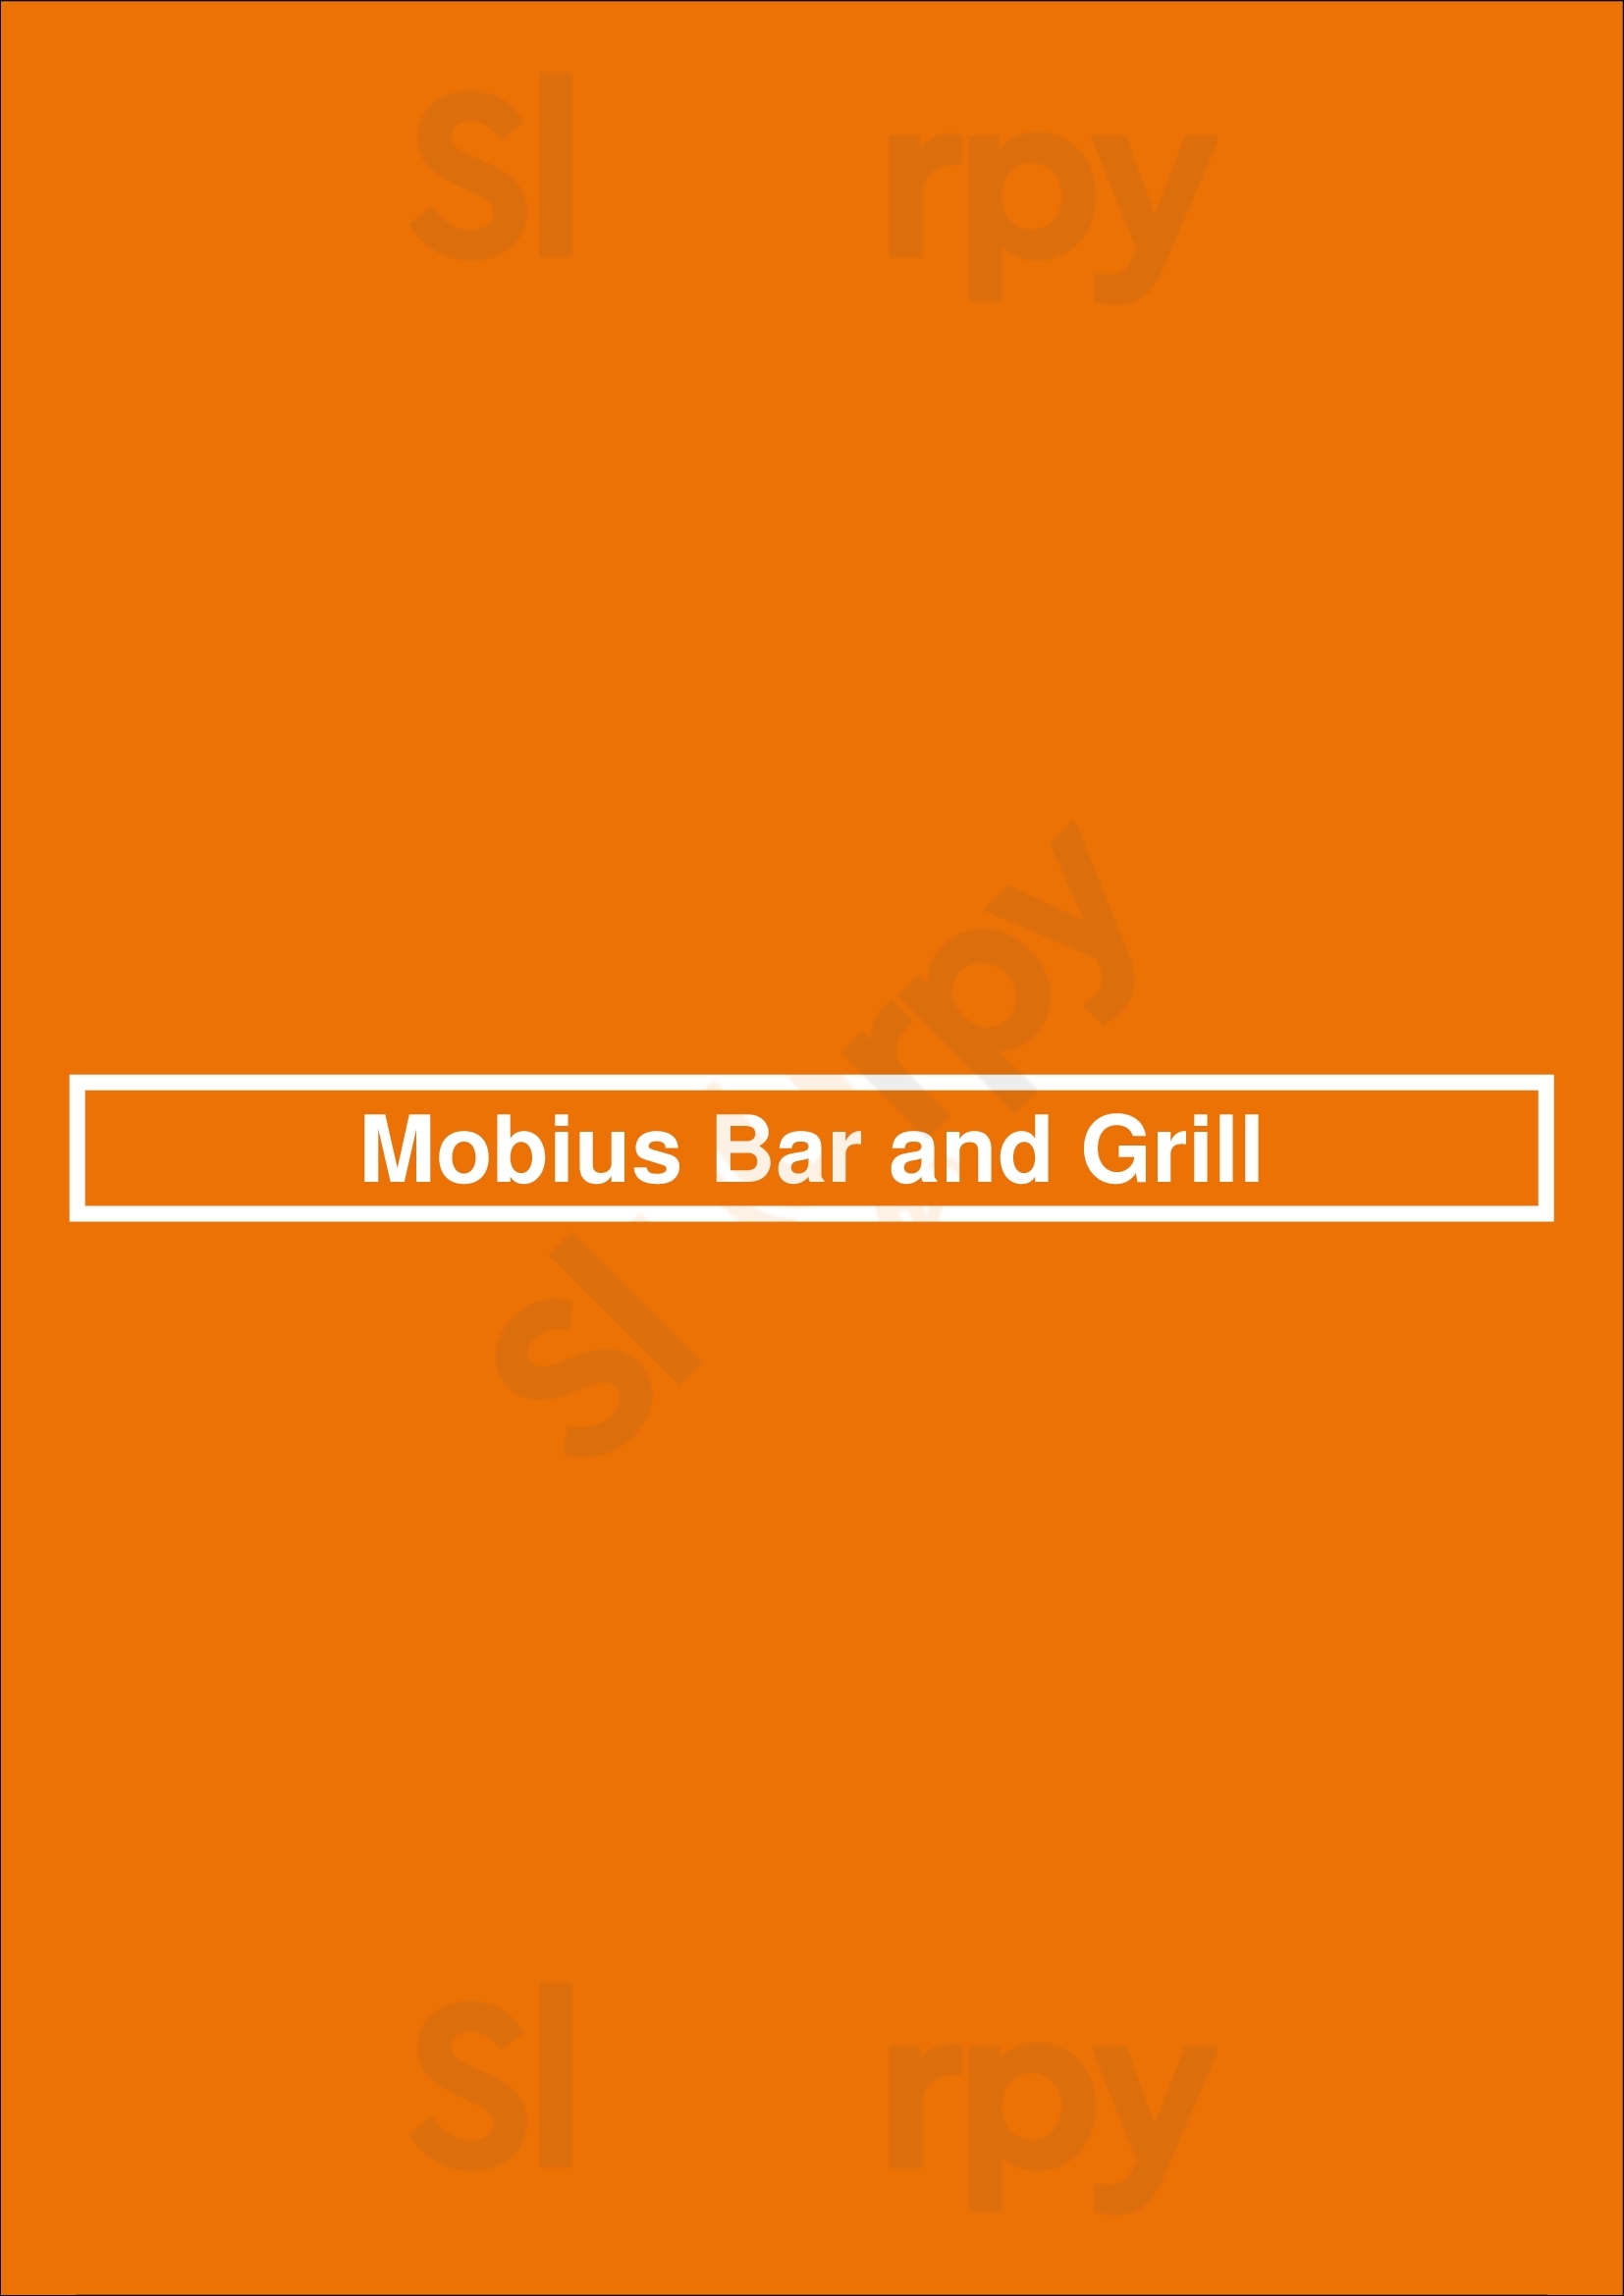 Mobius Bar And Grill Mascot Menu - 1